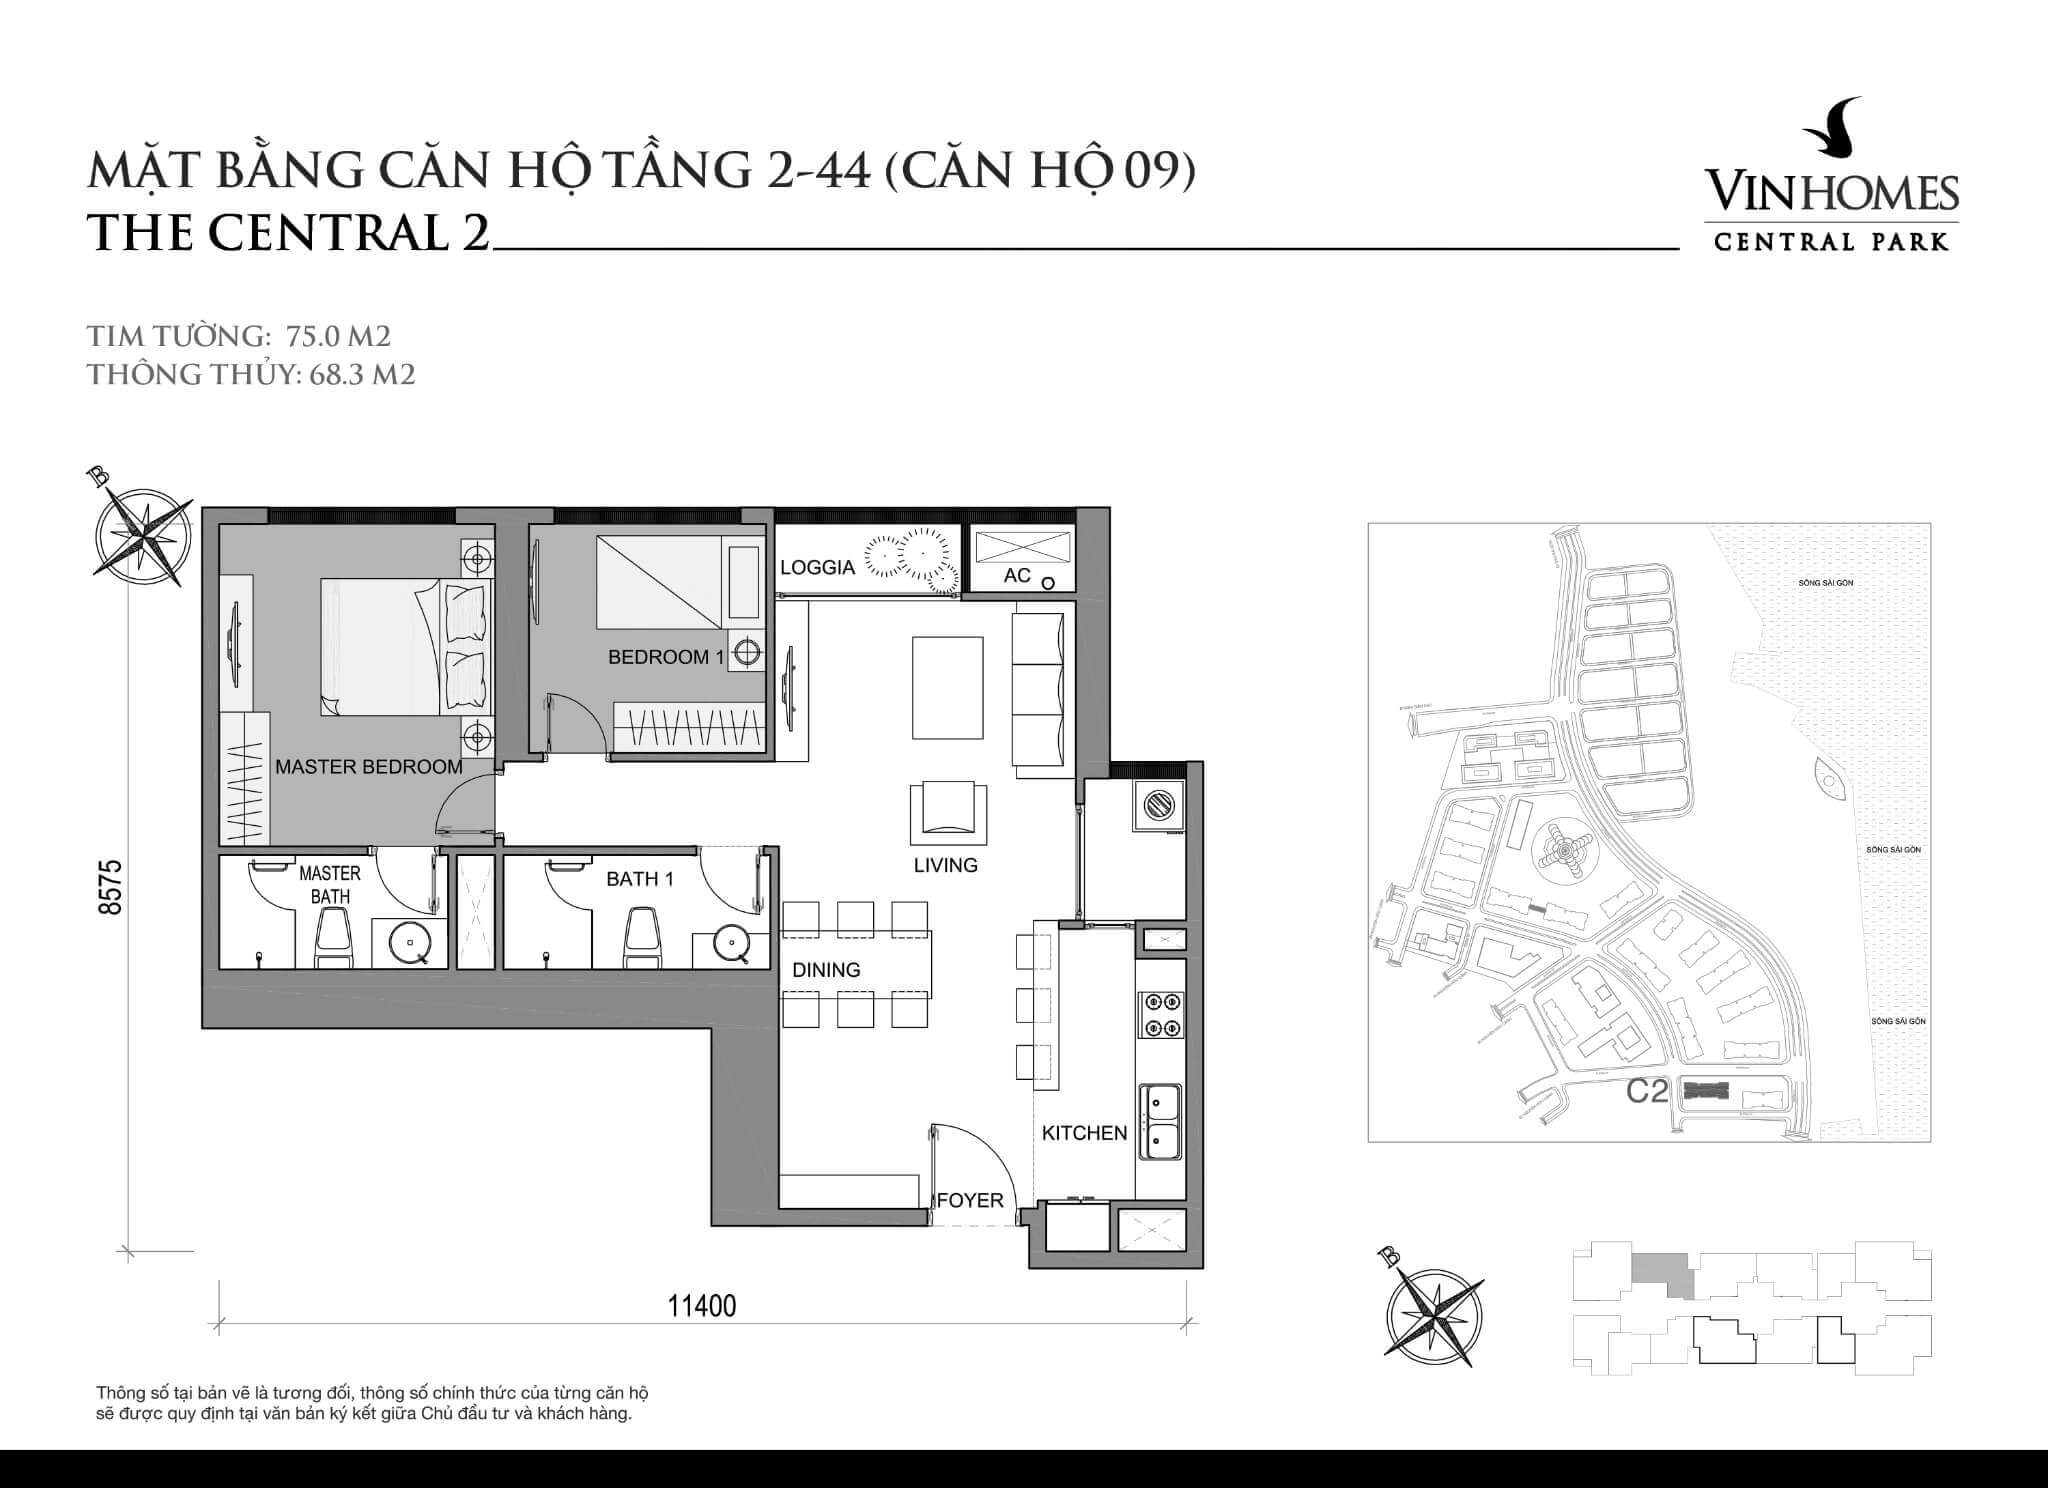 layout căn hộ số 9 tầng 2-44 Central 2